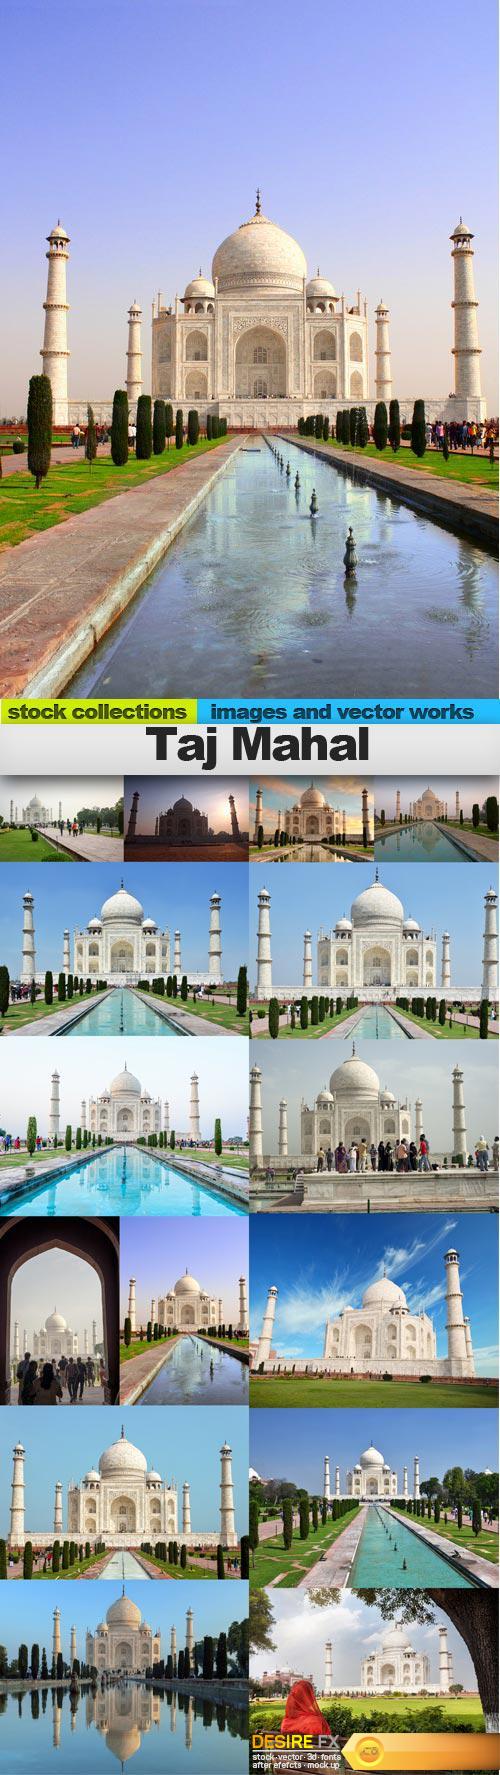 Taj Mahal, 15 x UHQ JPEG